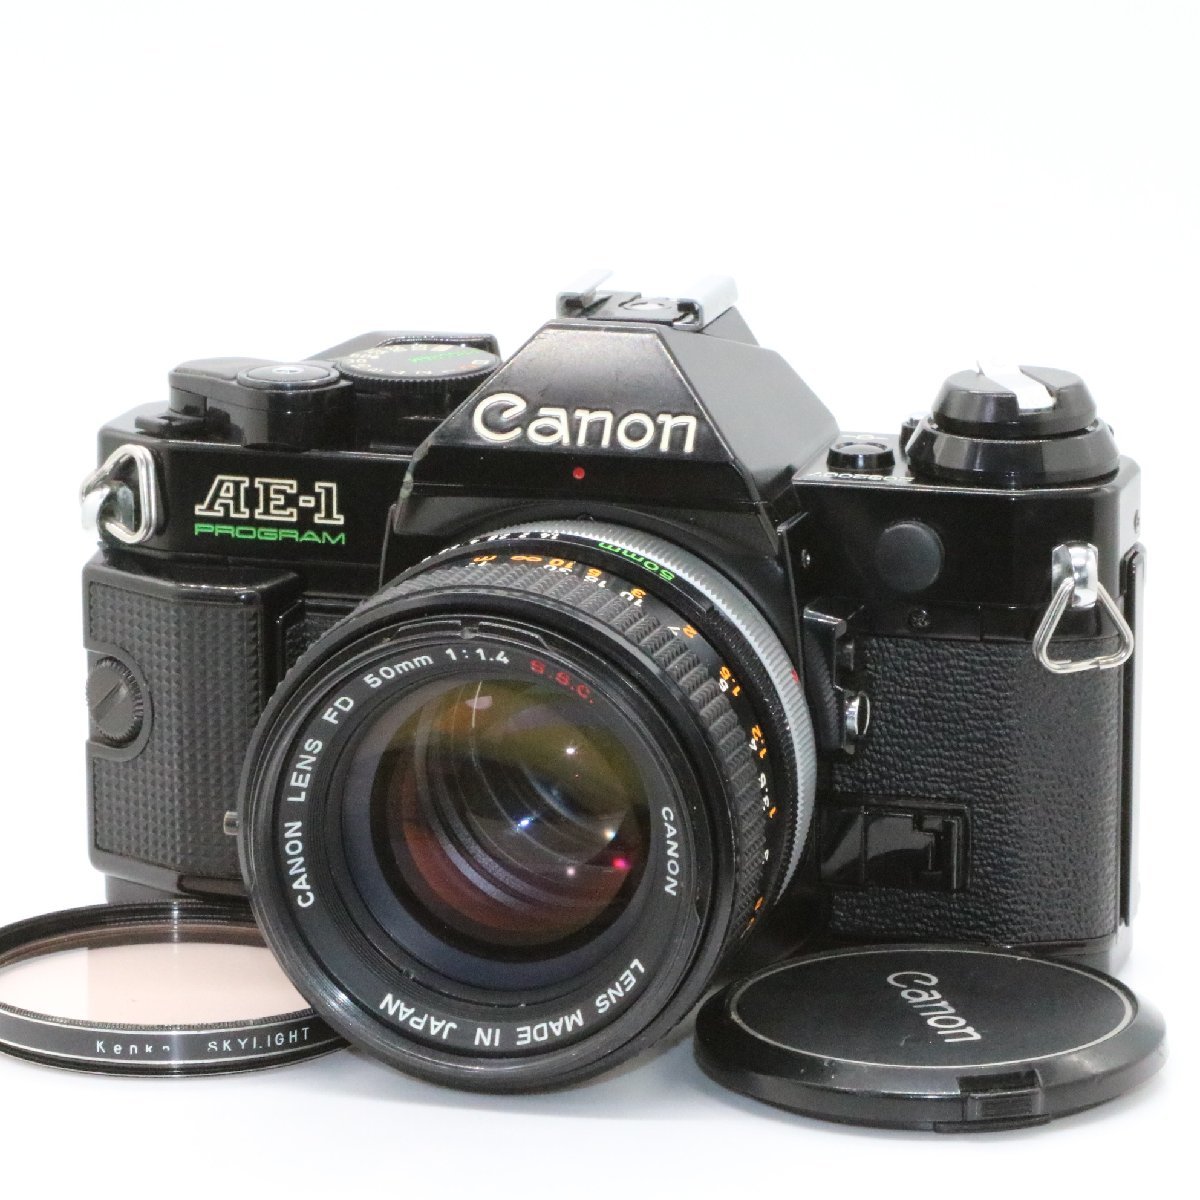 良品 Canon AE-1 Program ブラック 一眼レフフィルムカメラ FD 50mm f1.4 S.S.C. SSC 標準 単焦点 プライム マニュアル オールドレンズ